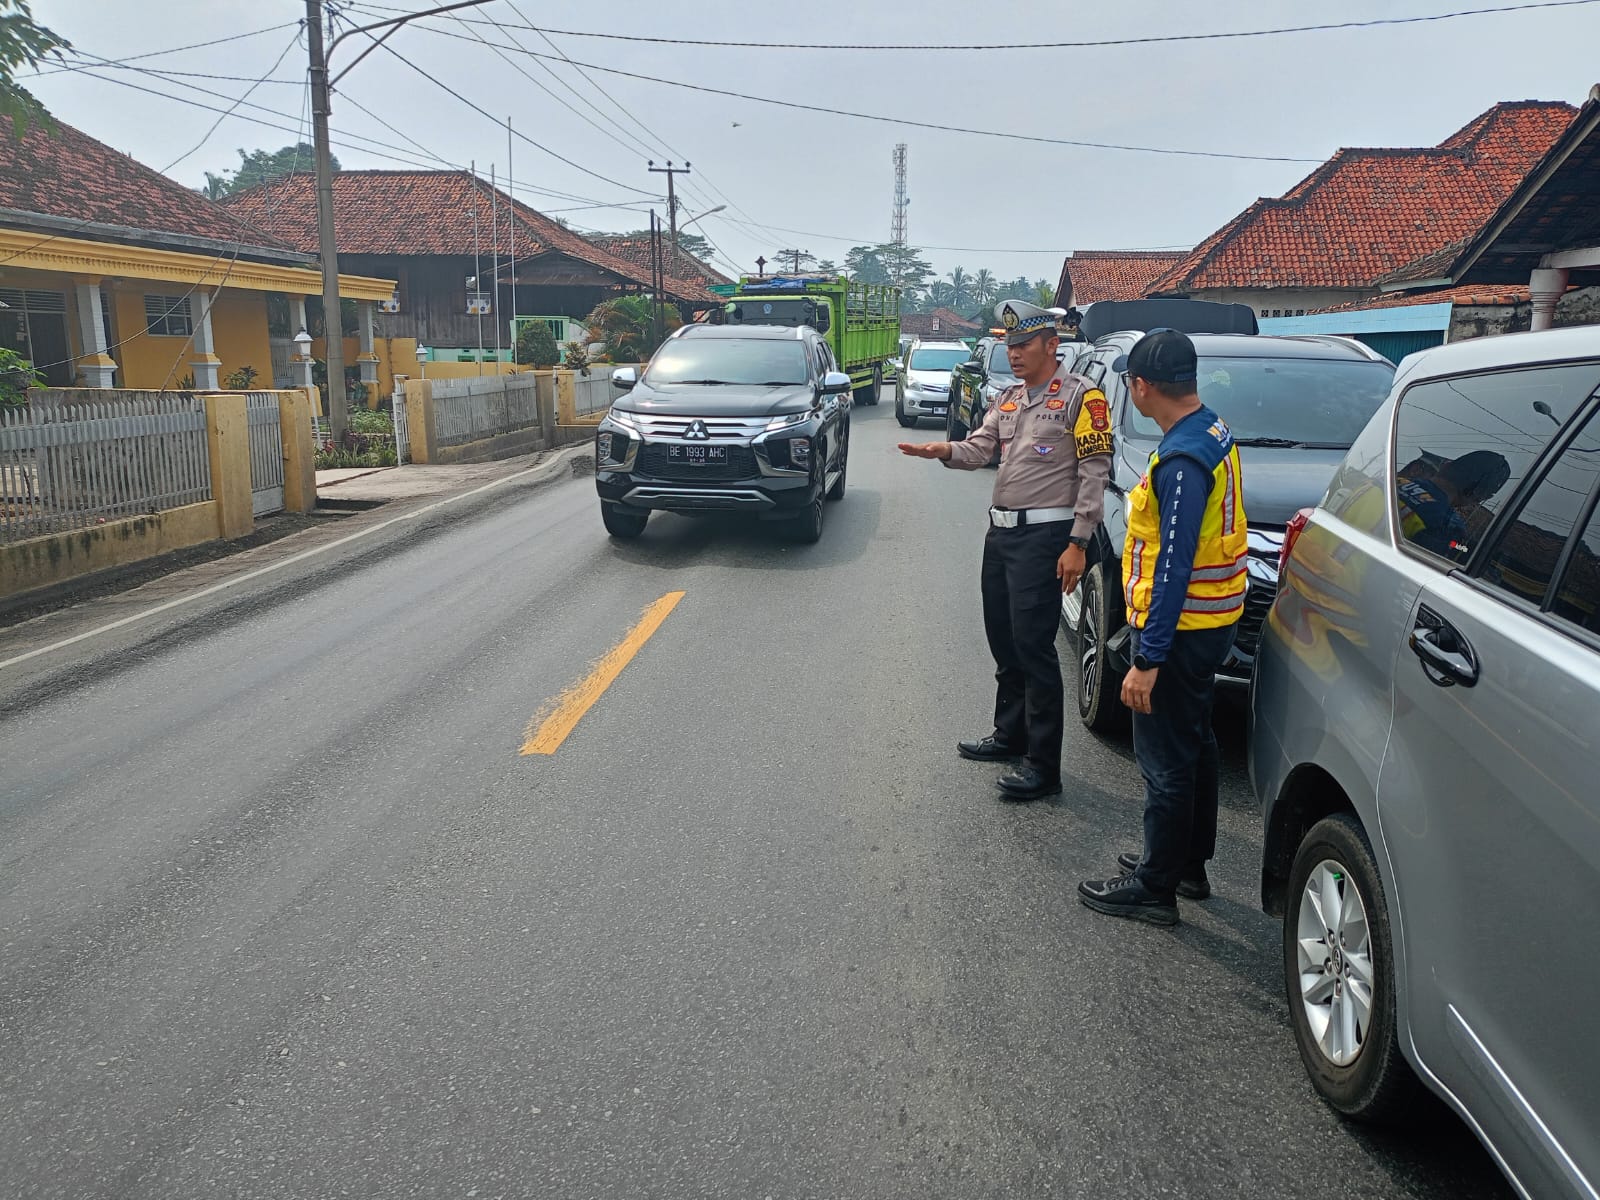 Cegah Laka Lantas, Polres Lampung Utara Bersama BPJN Lampung Survey Jalan Rusak